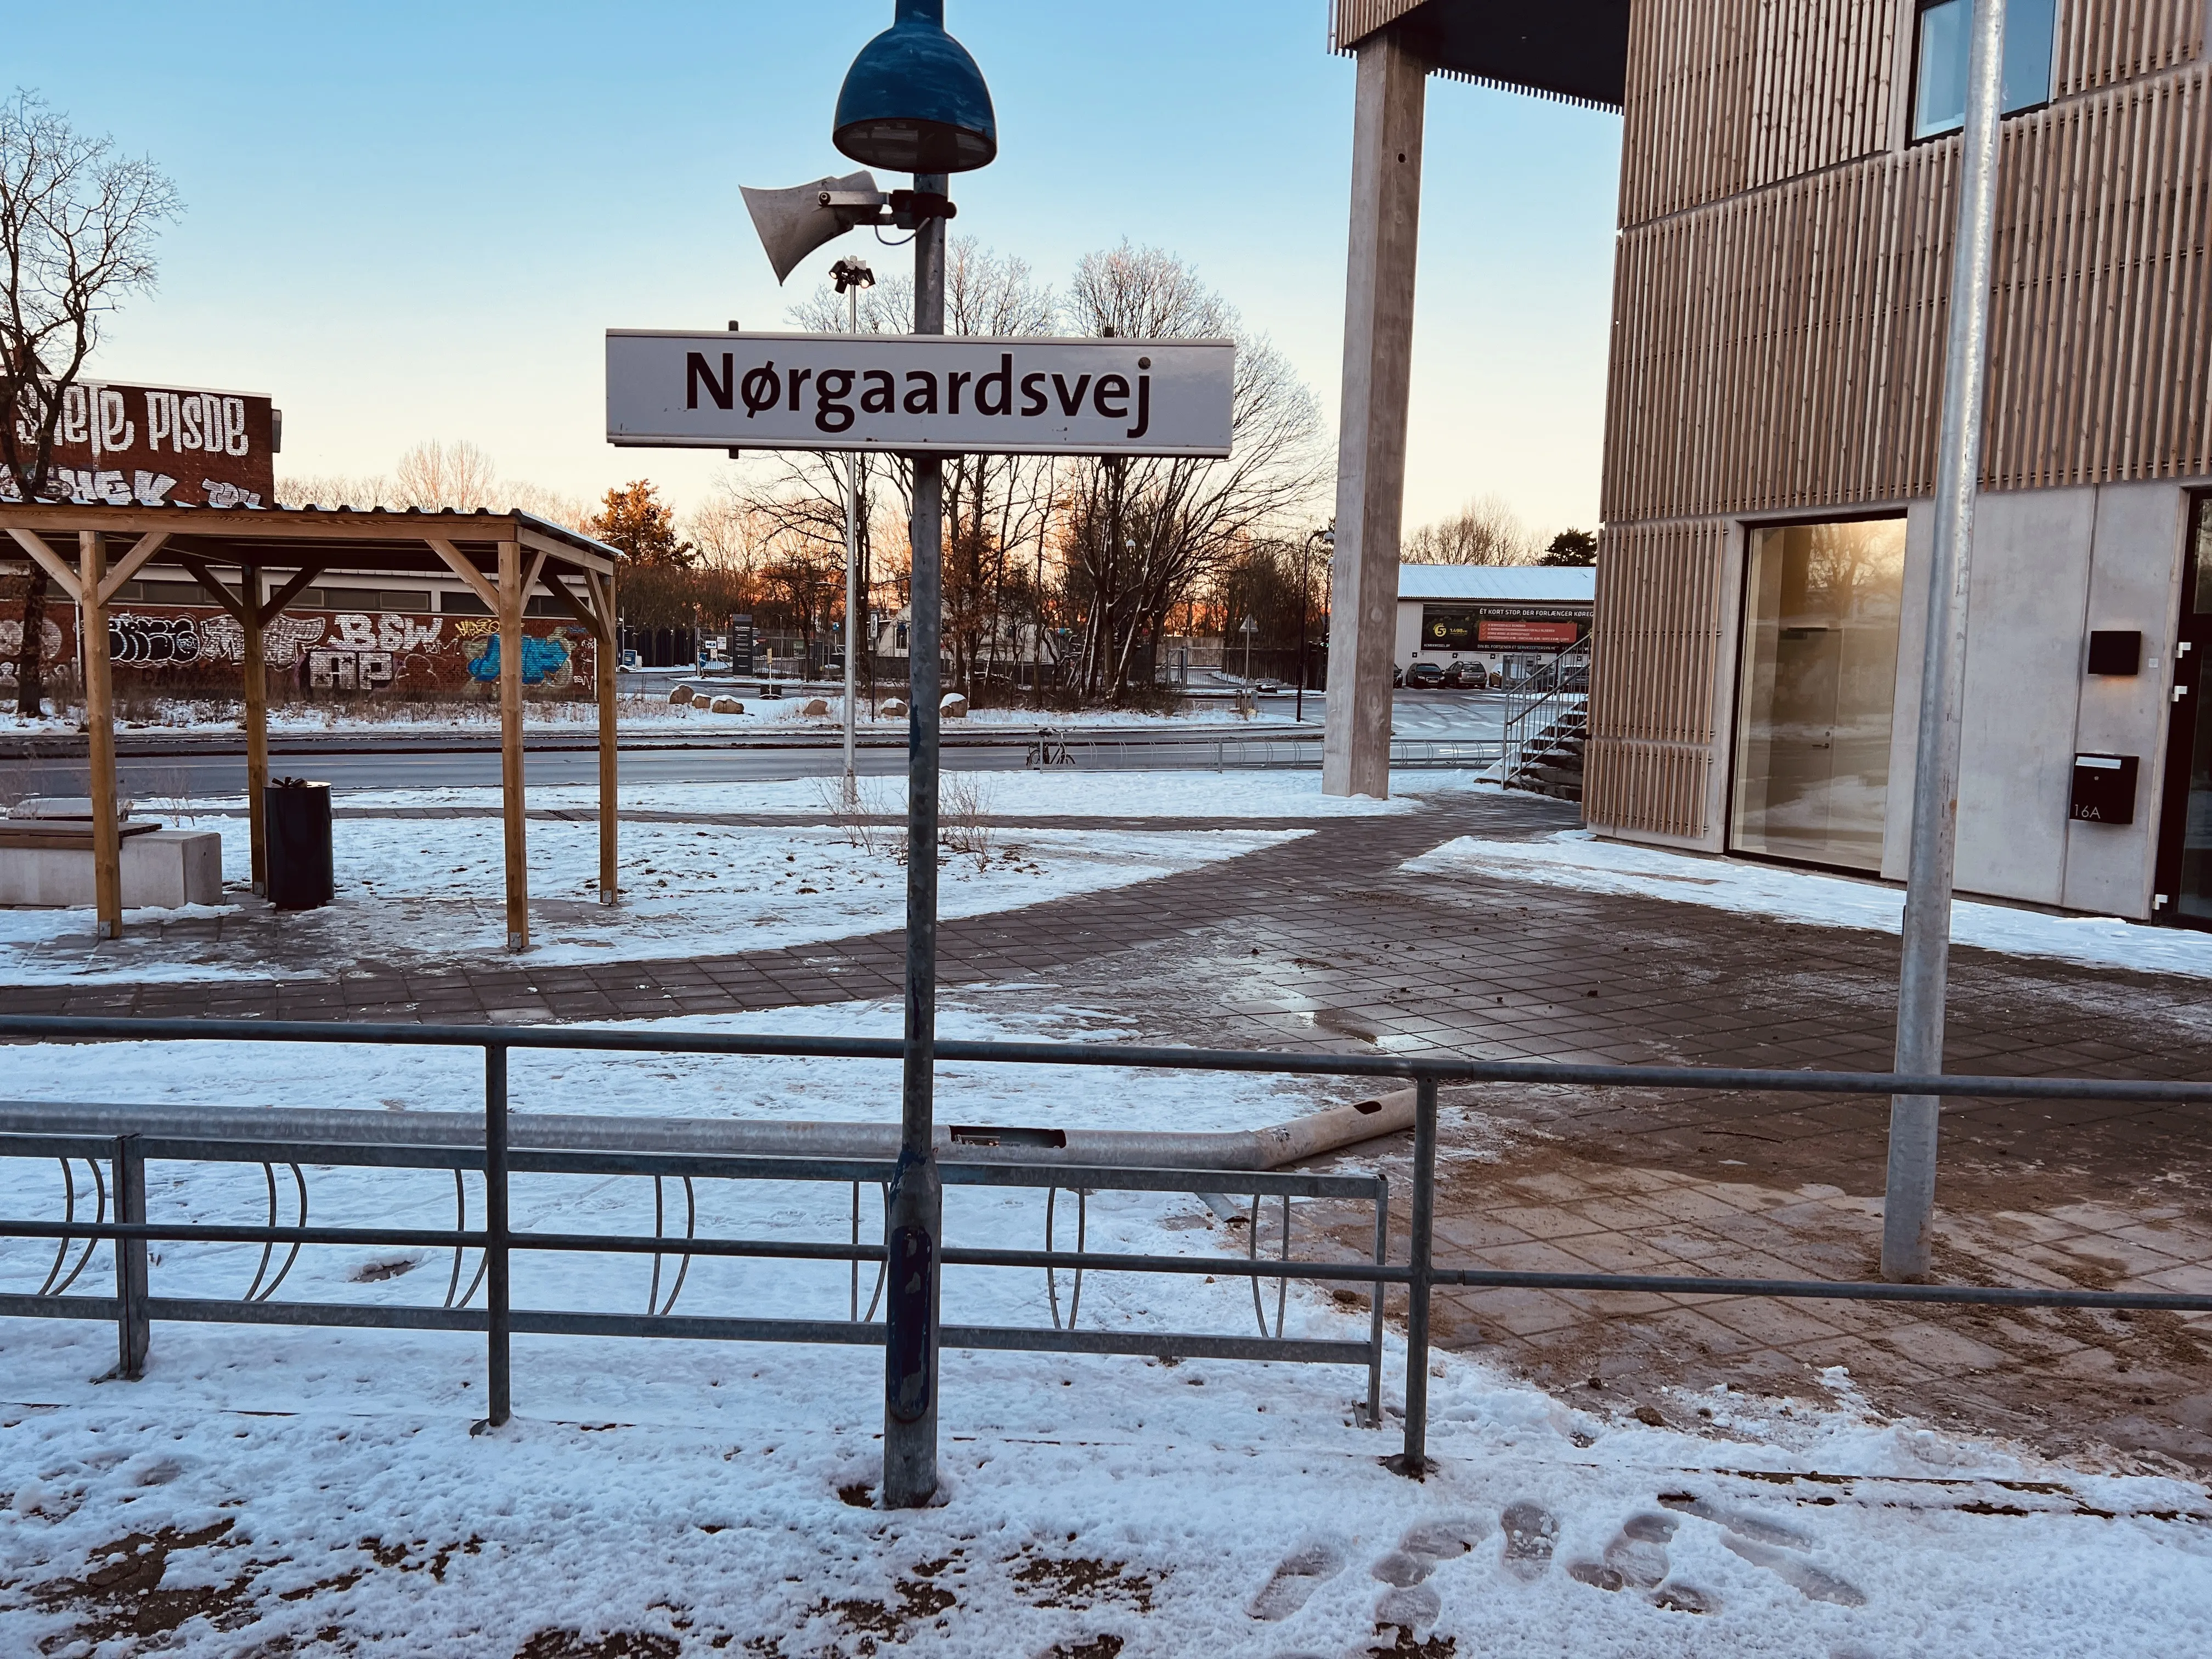 Billede af Nørgaardsvej Trinbræt.